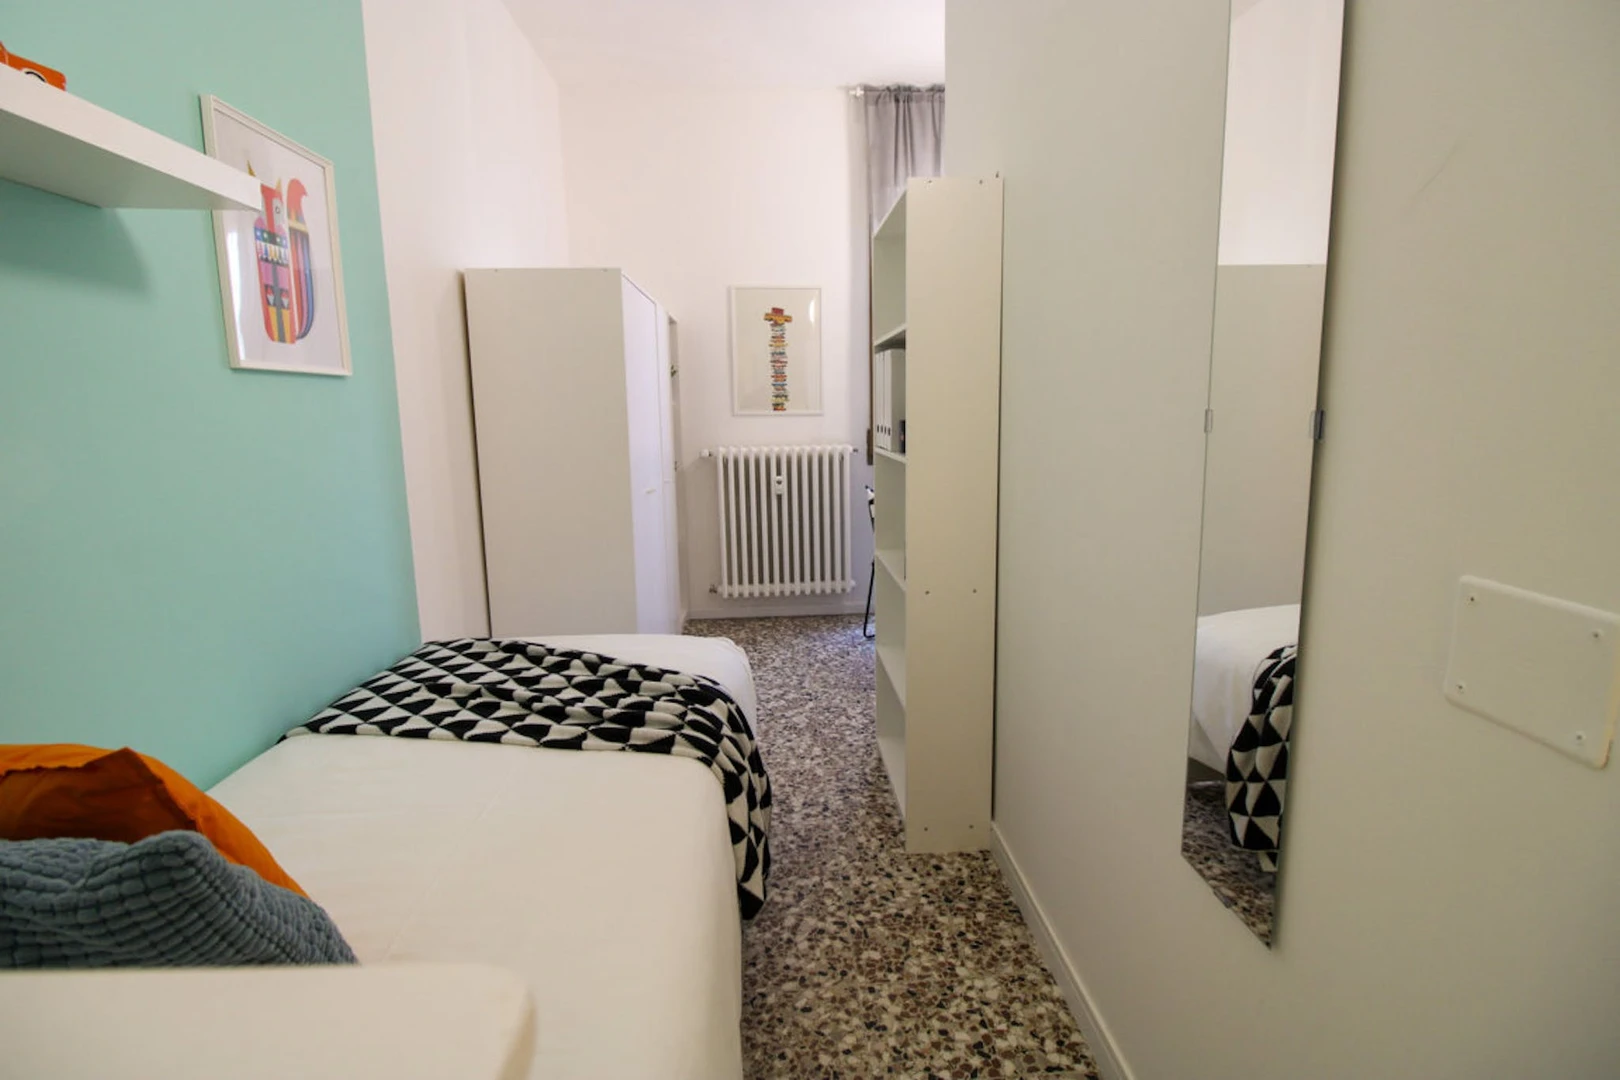 Pavia de çift kişilik yataklı kiralık oda